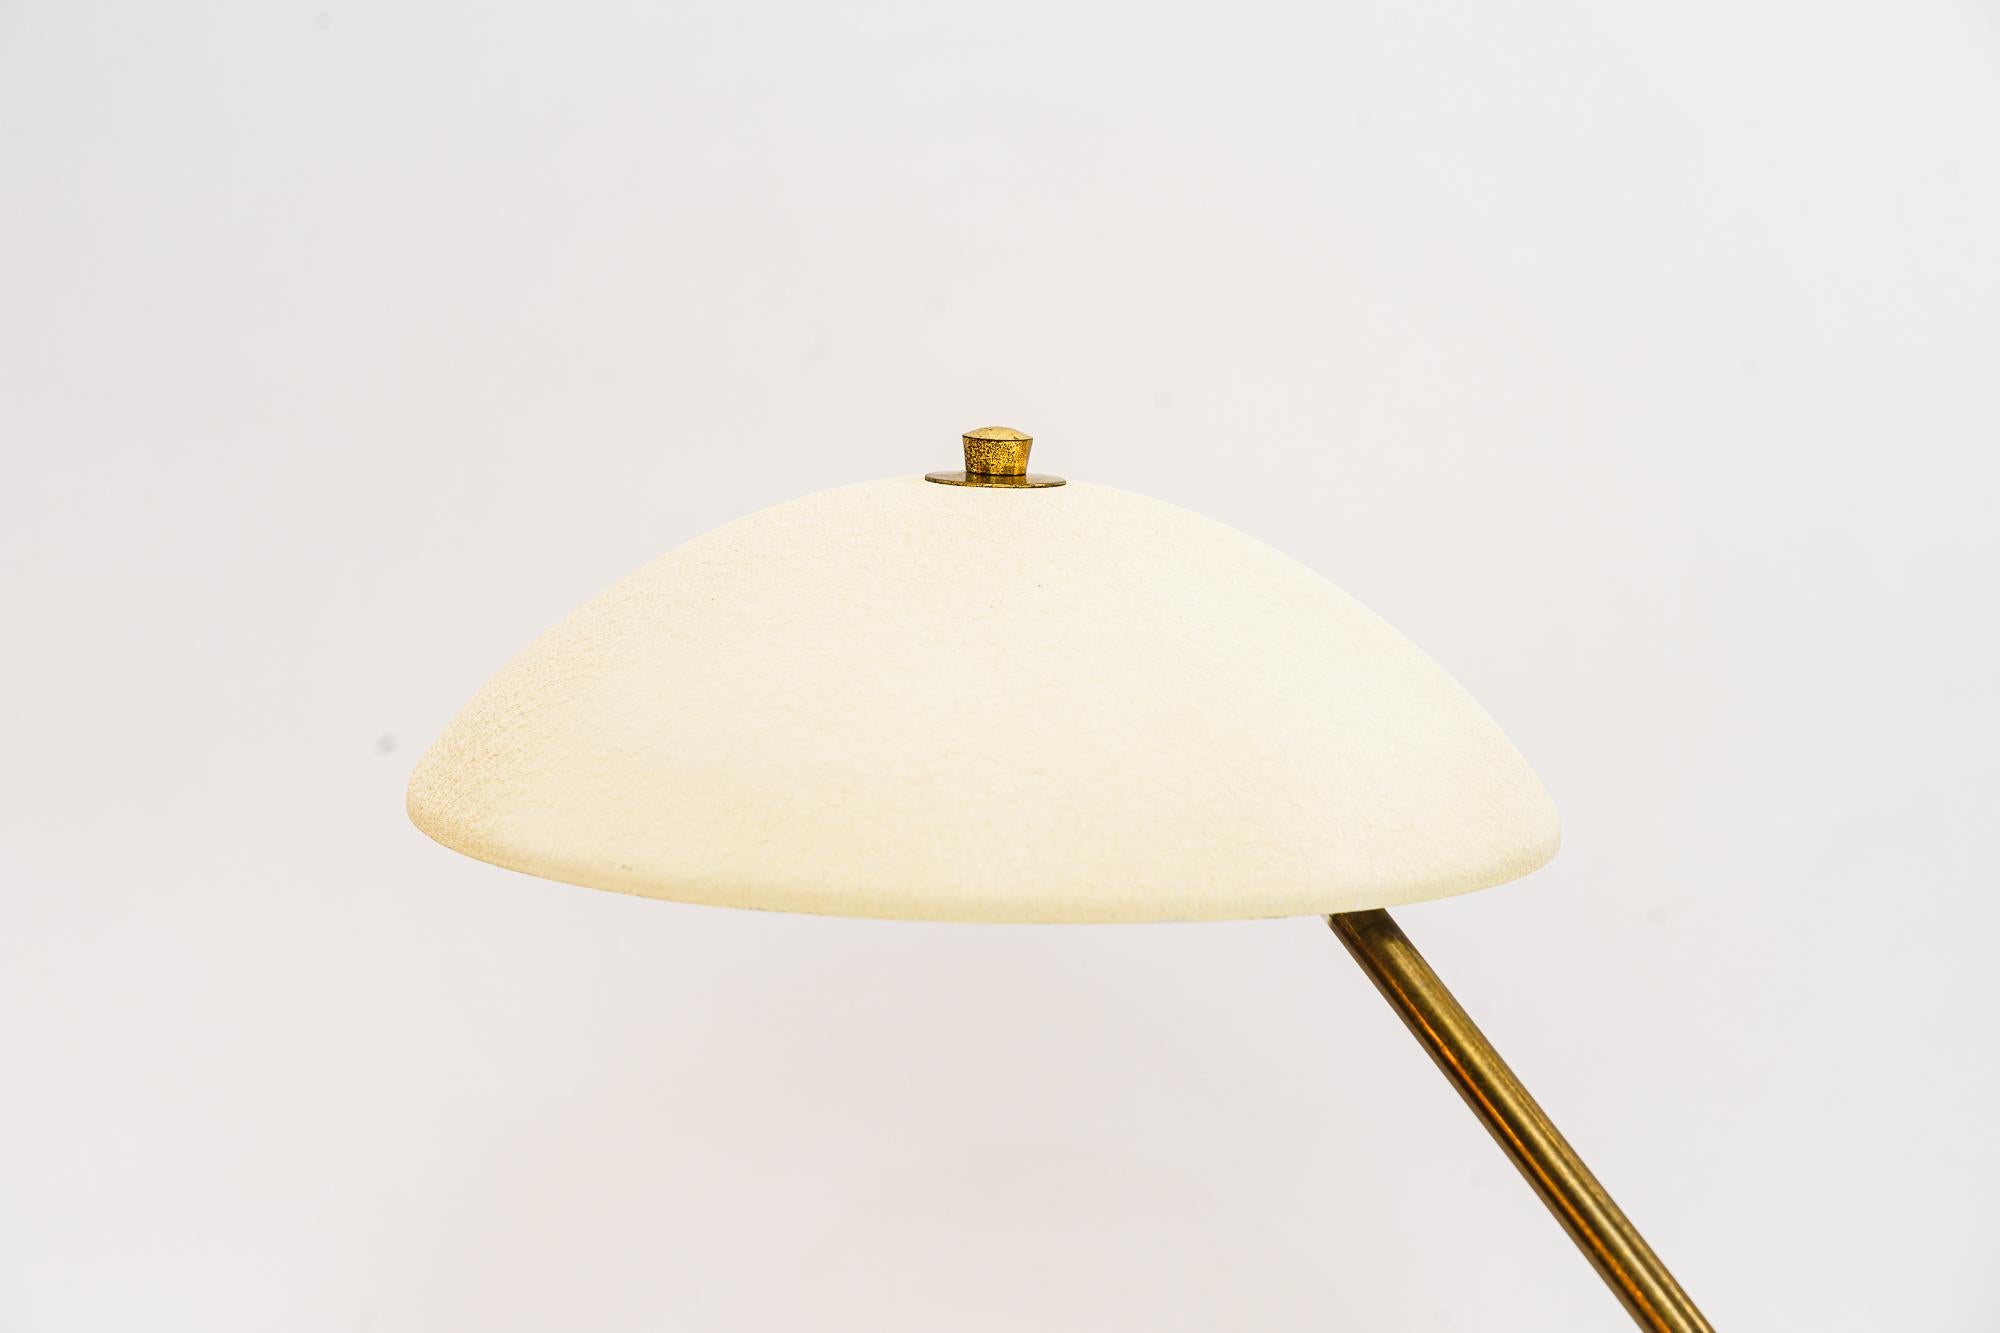 Table lamp vienna around 1960s
Original condition